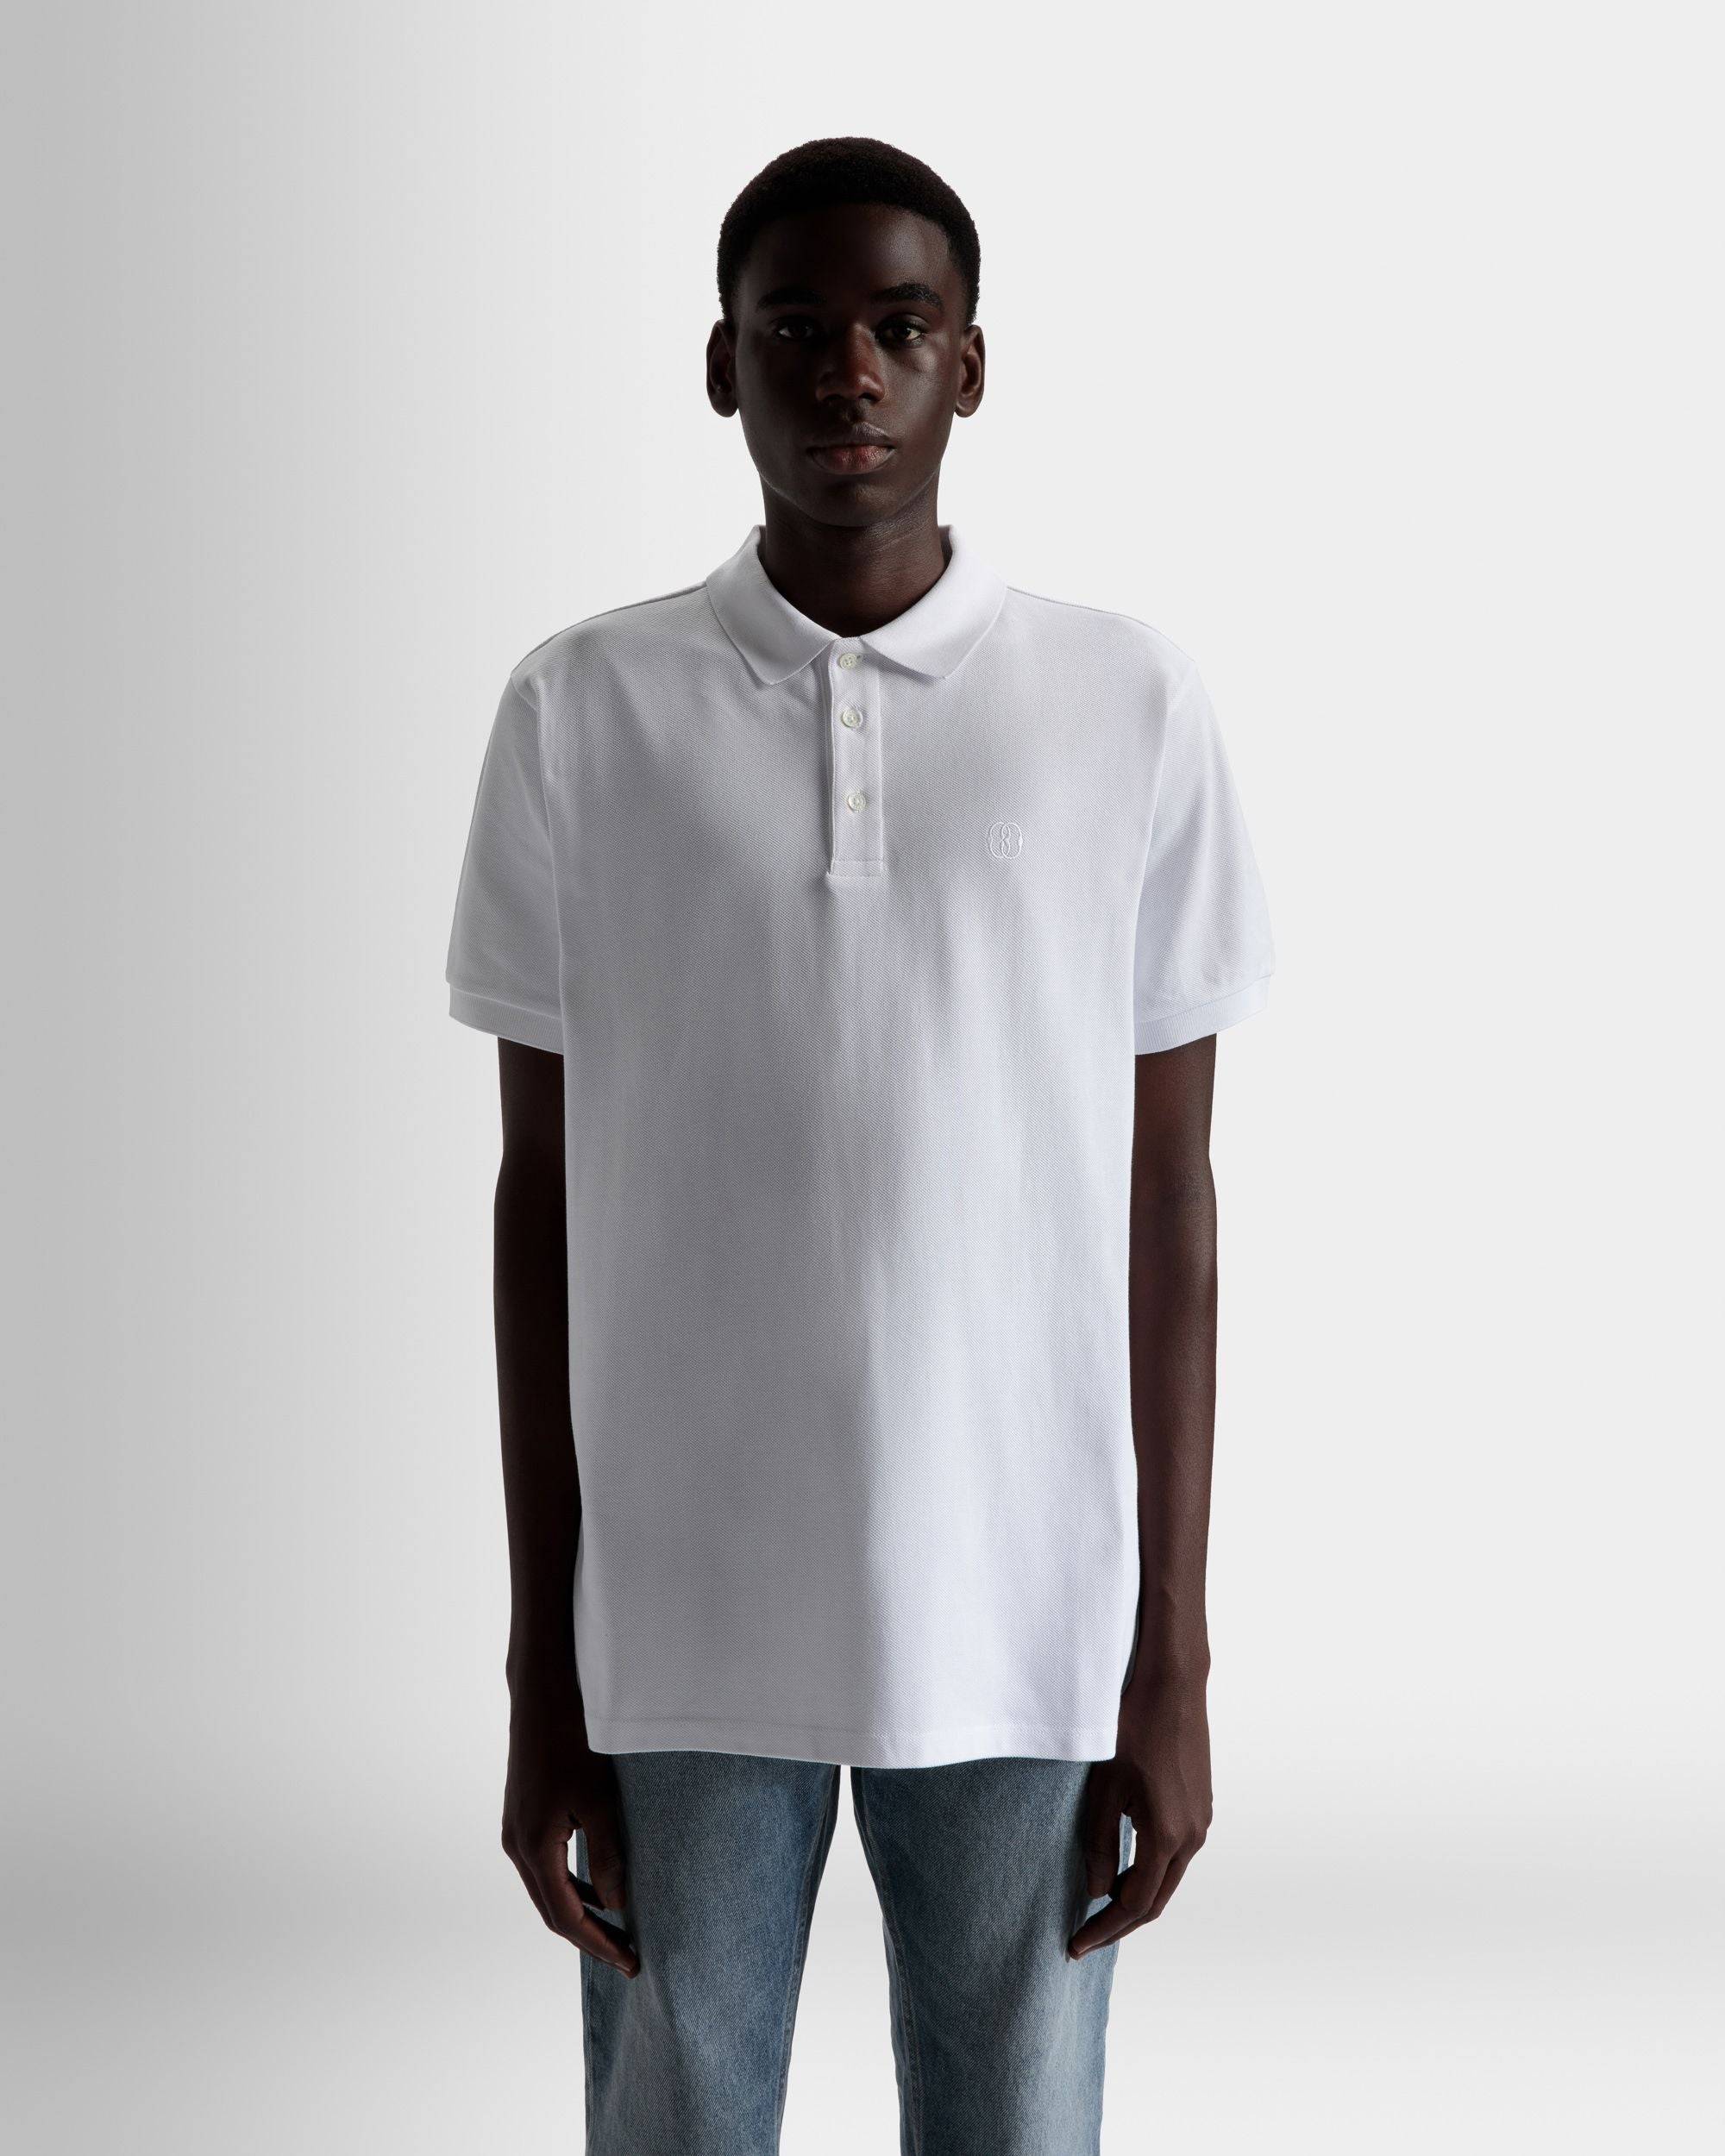 Kurzarm-Poloshirt | Poloshirt für Herren | Weiße Baumwolle | Bally | Model getragen Nahaufnahme